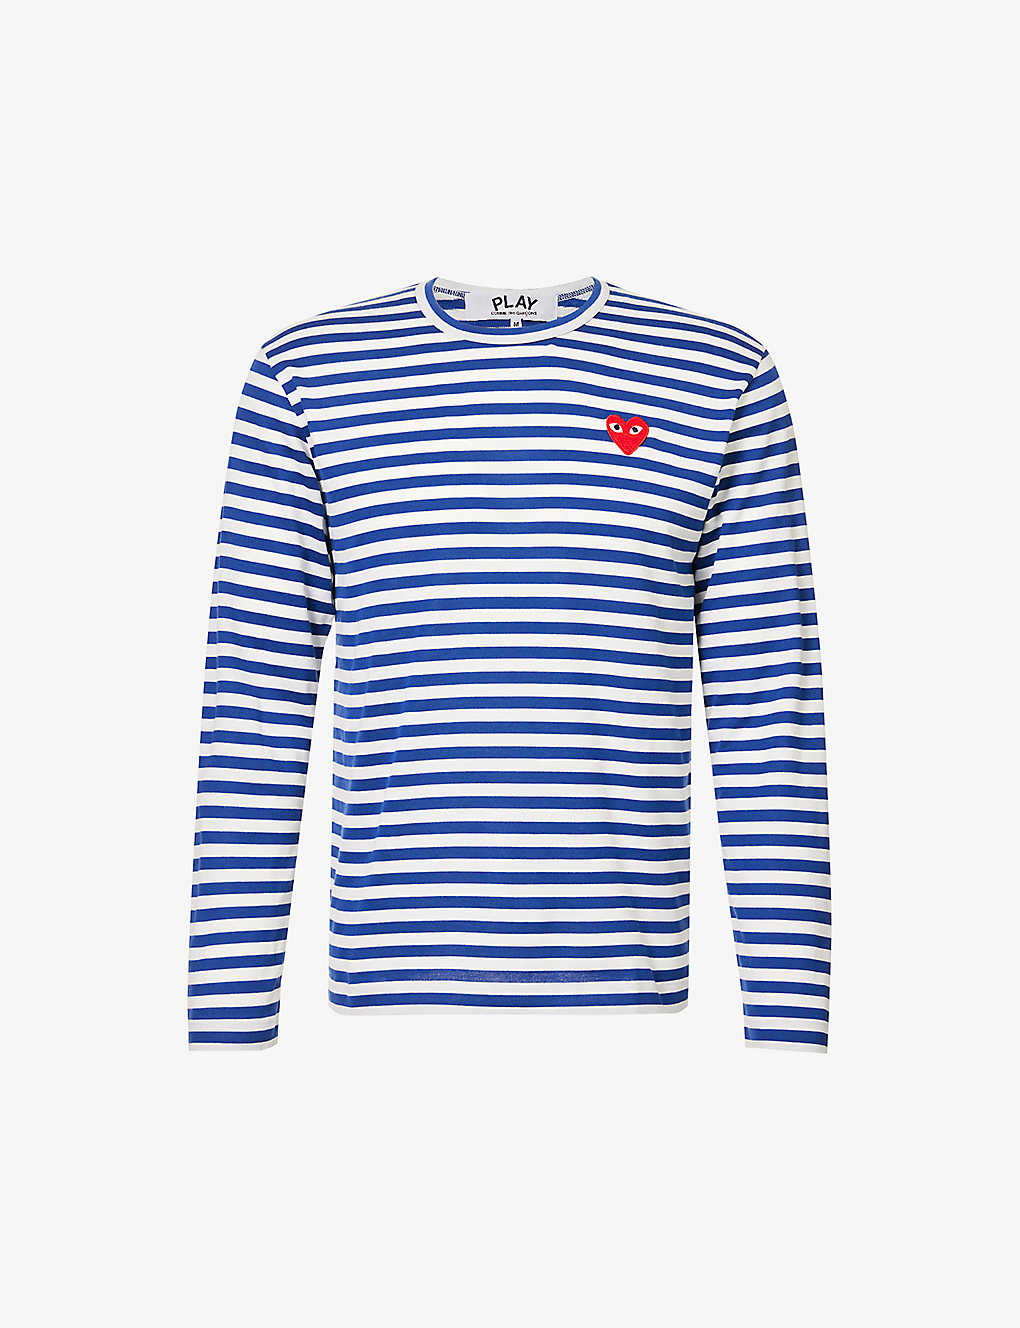 Shop Comme Des Garçons Play Comme Des Garcons Play Men's Navy Striped Cotton-jersey Top